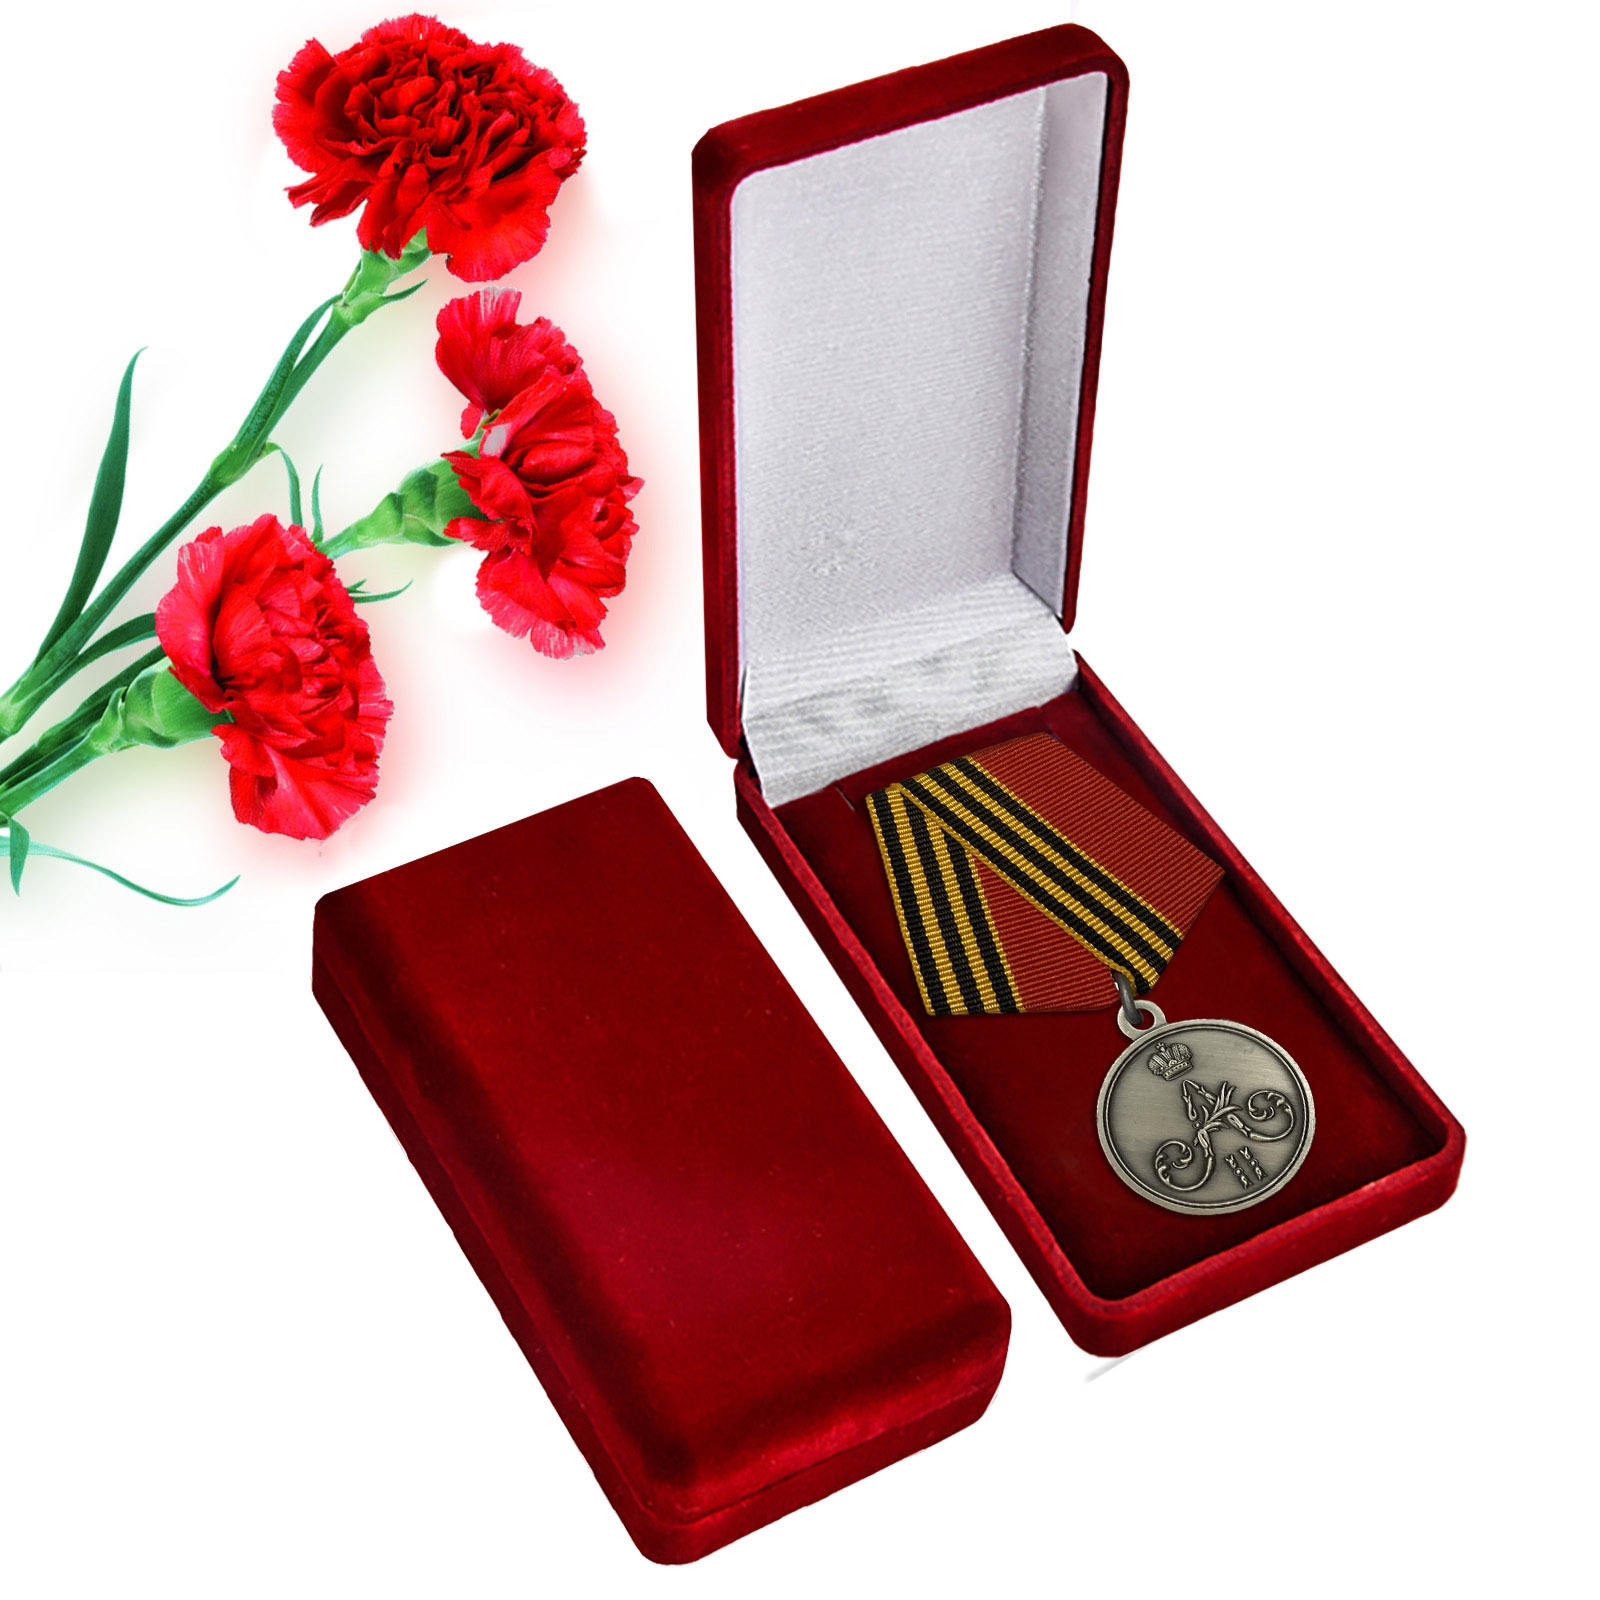 Купить памятную медаль За покорение Чечни и Дагестана оптом или в розницу